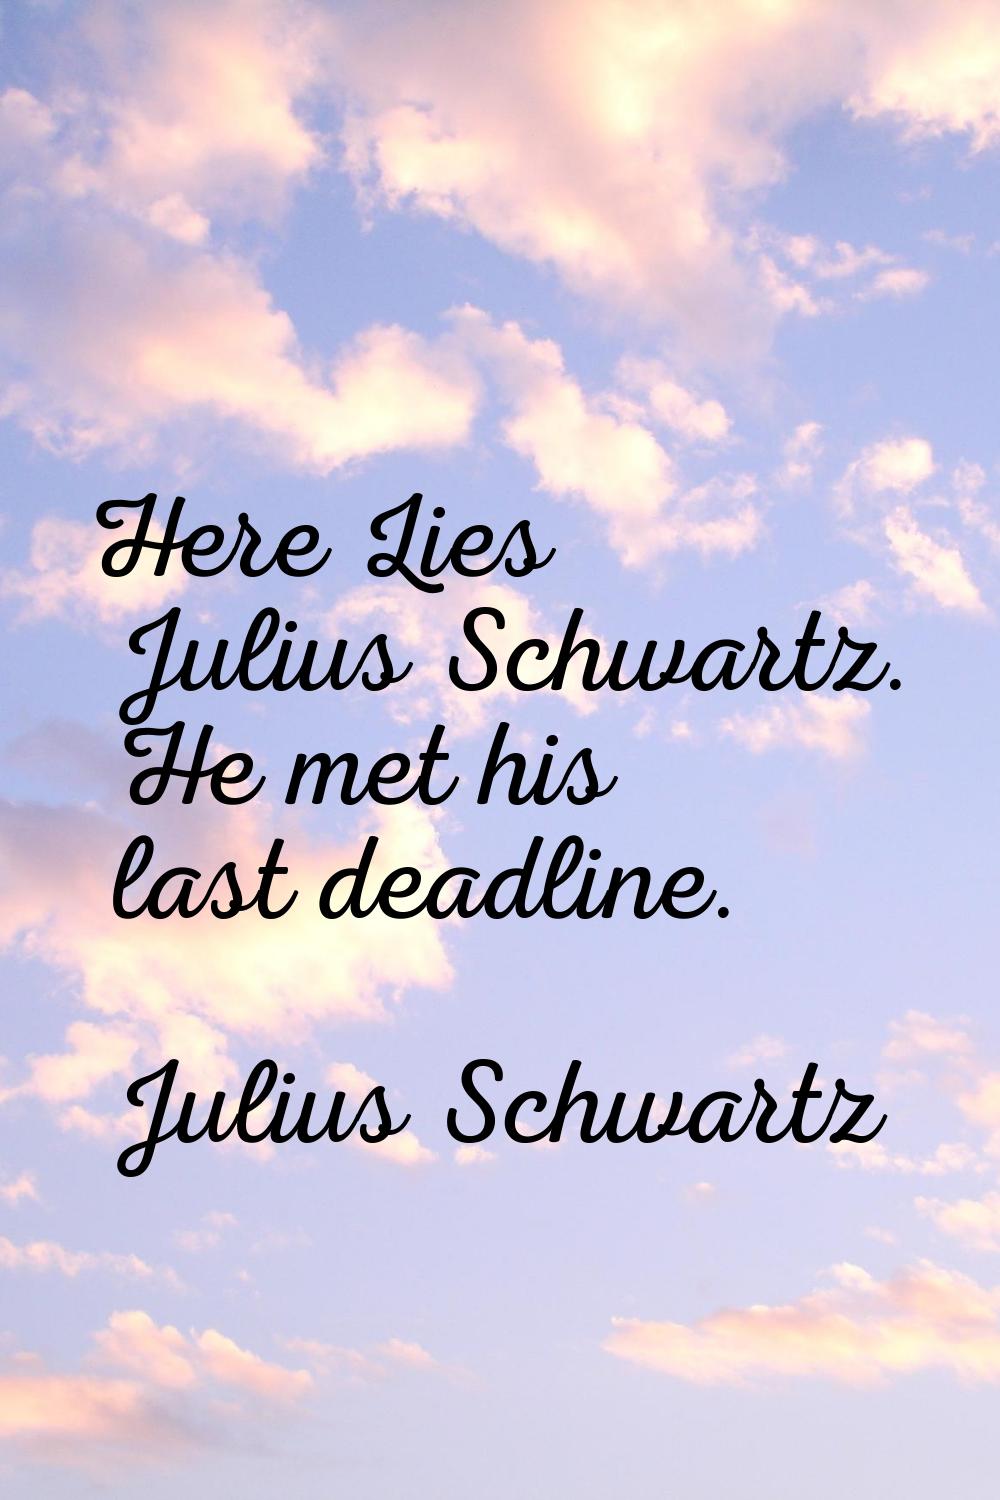 Here Lies Julius Schwartz. He met his last deadline.